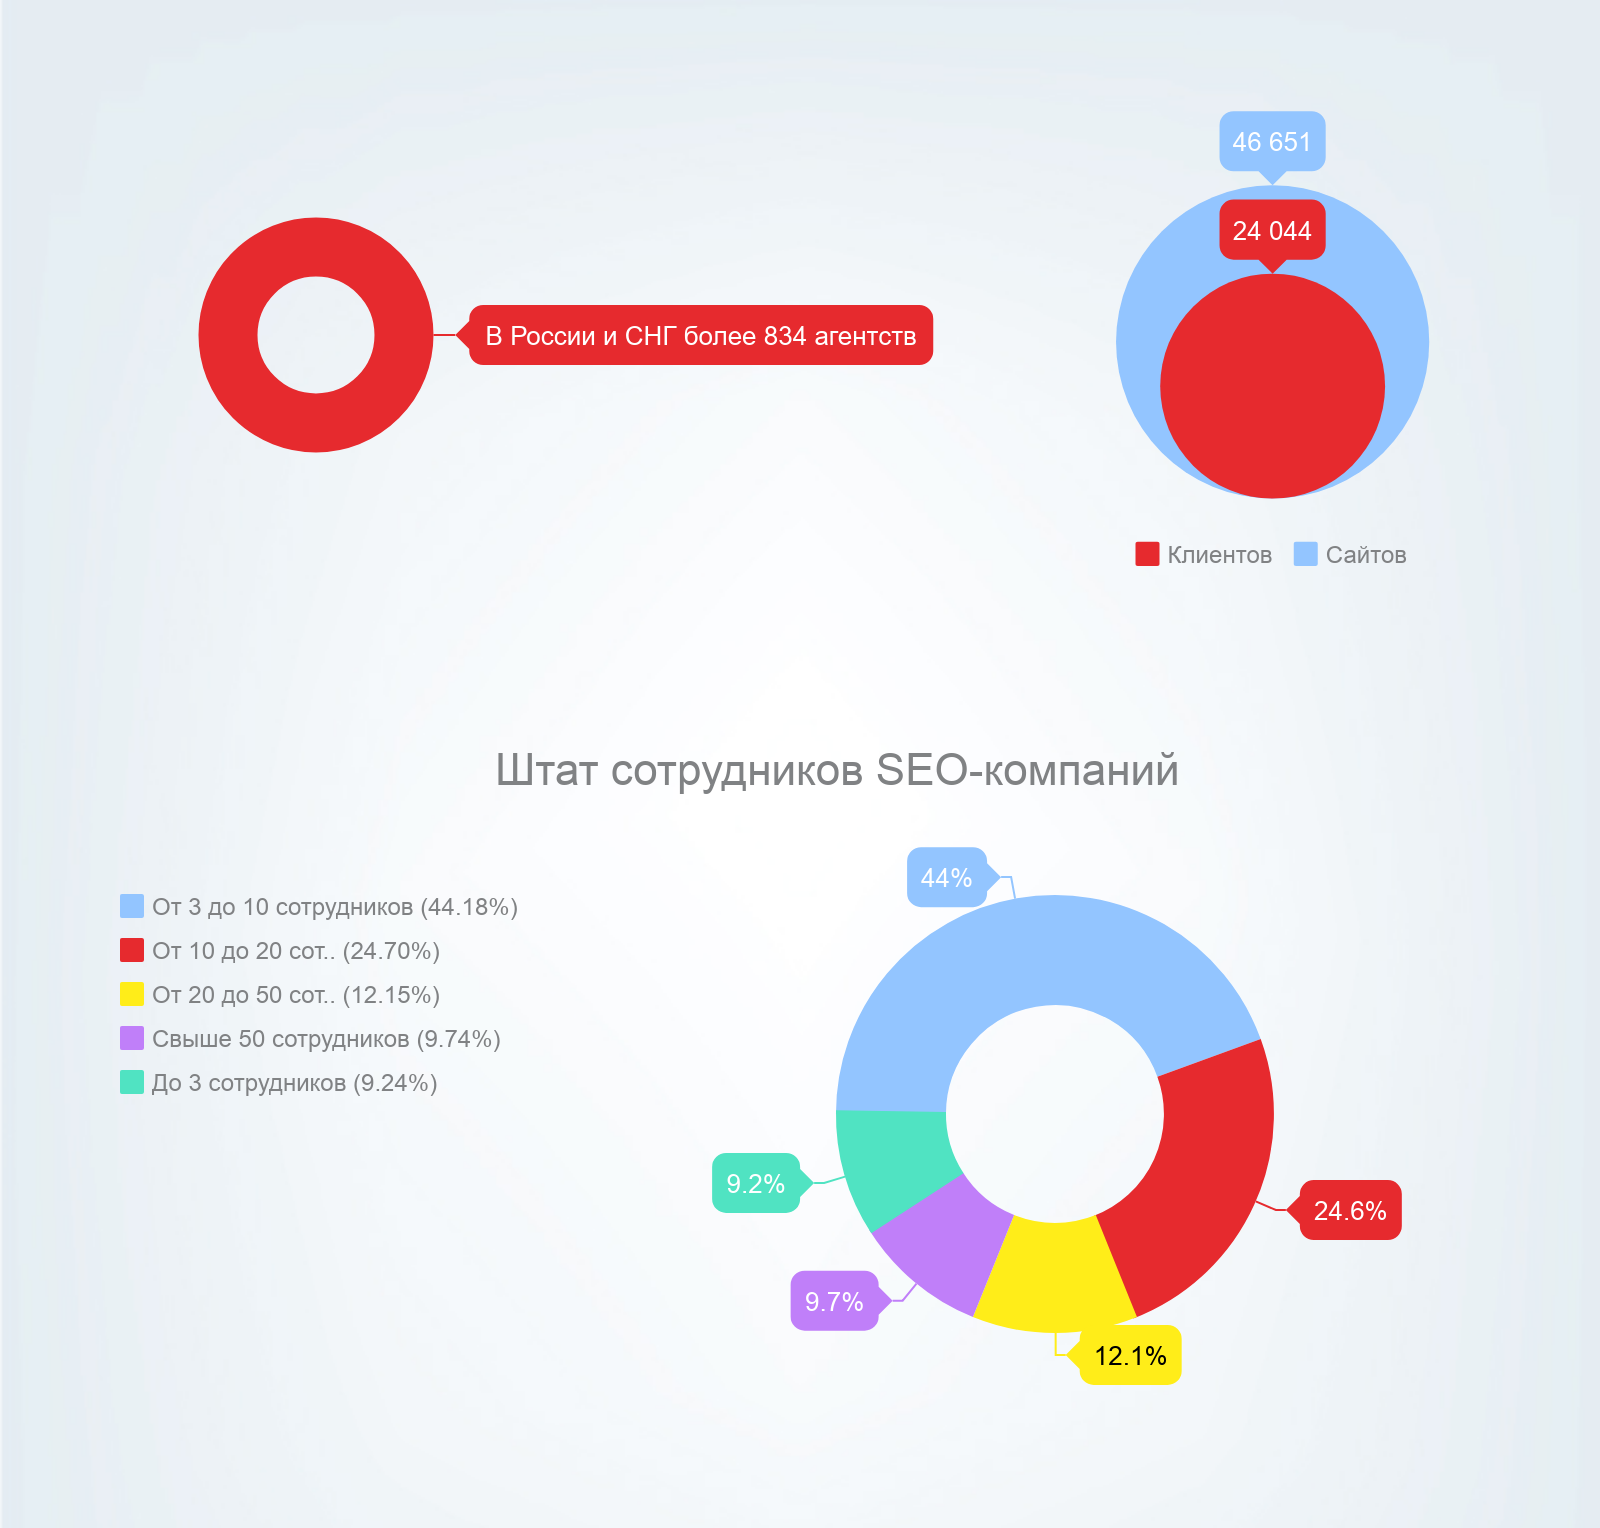 Количество сотрудников SEO-компаний